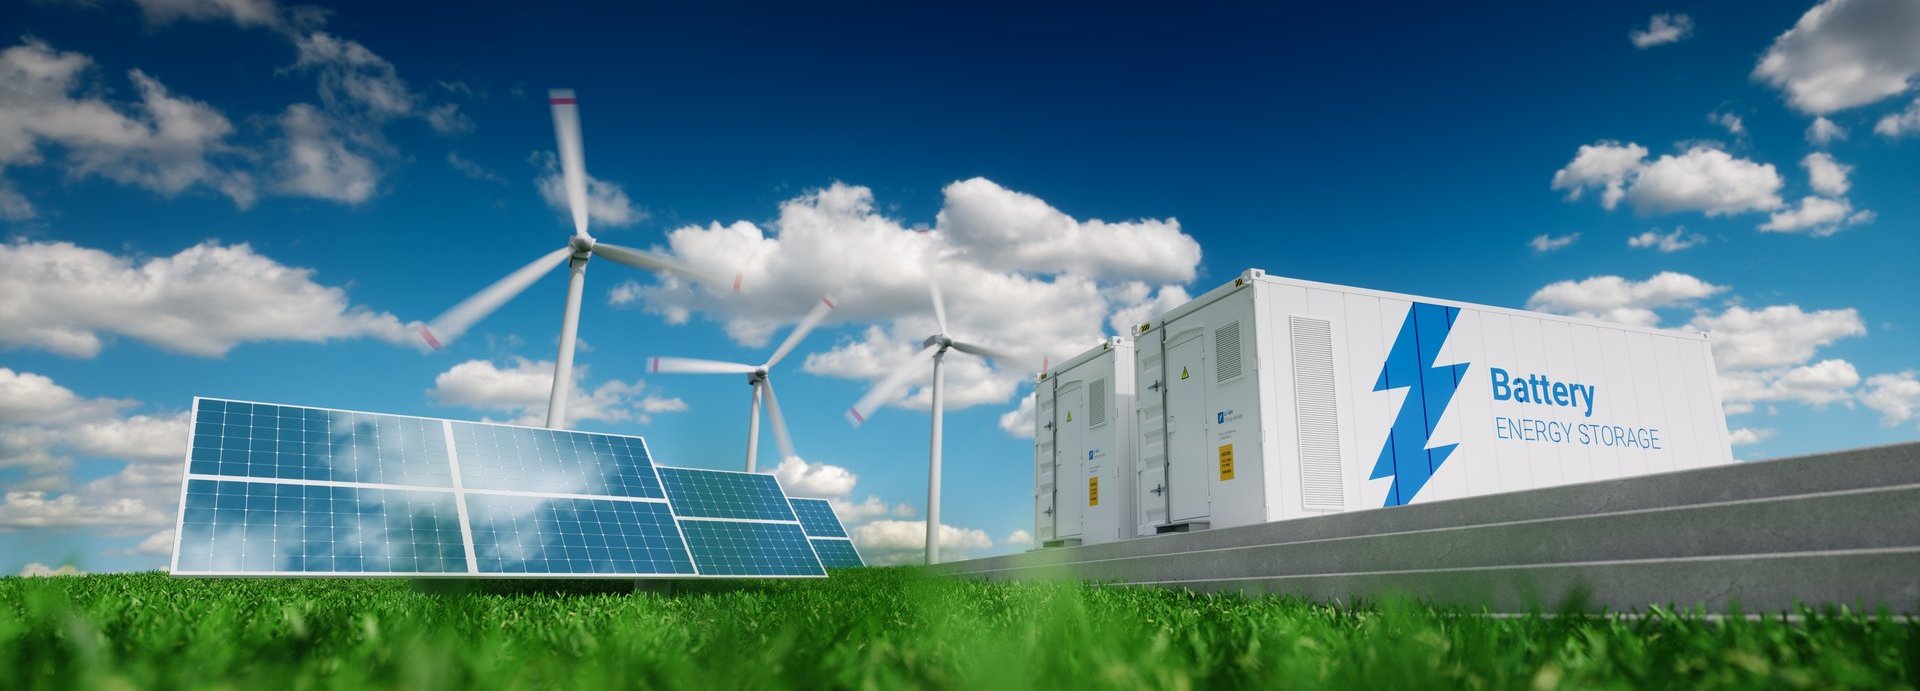 Konzept des Energiespeichersystems. Erneuerbare Energien - Photovoltaik, Windräder und Li-Ionen-Batteriecontainer in frischer Natur. 3D-Rendering.